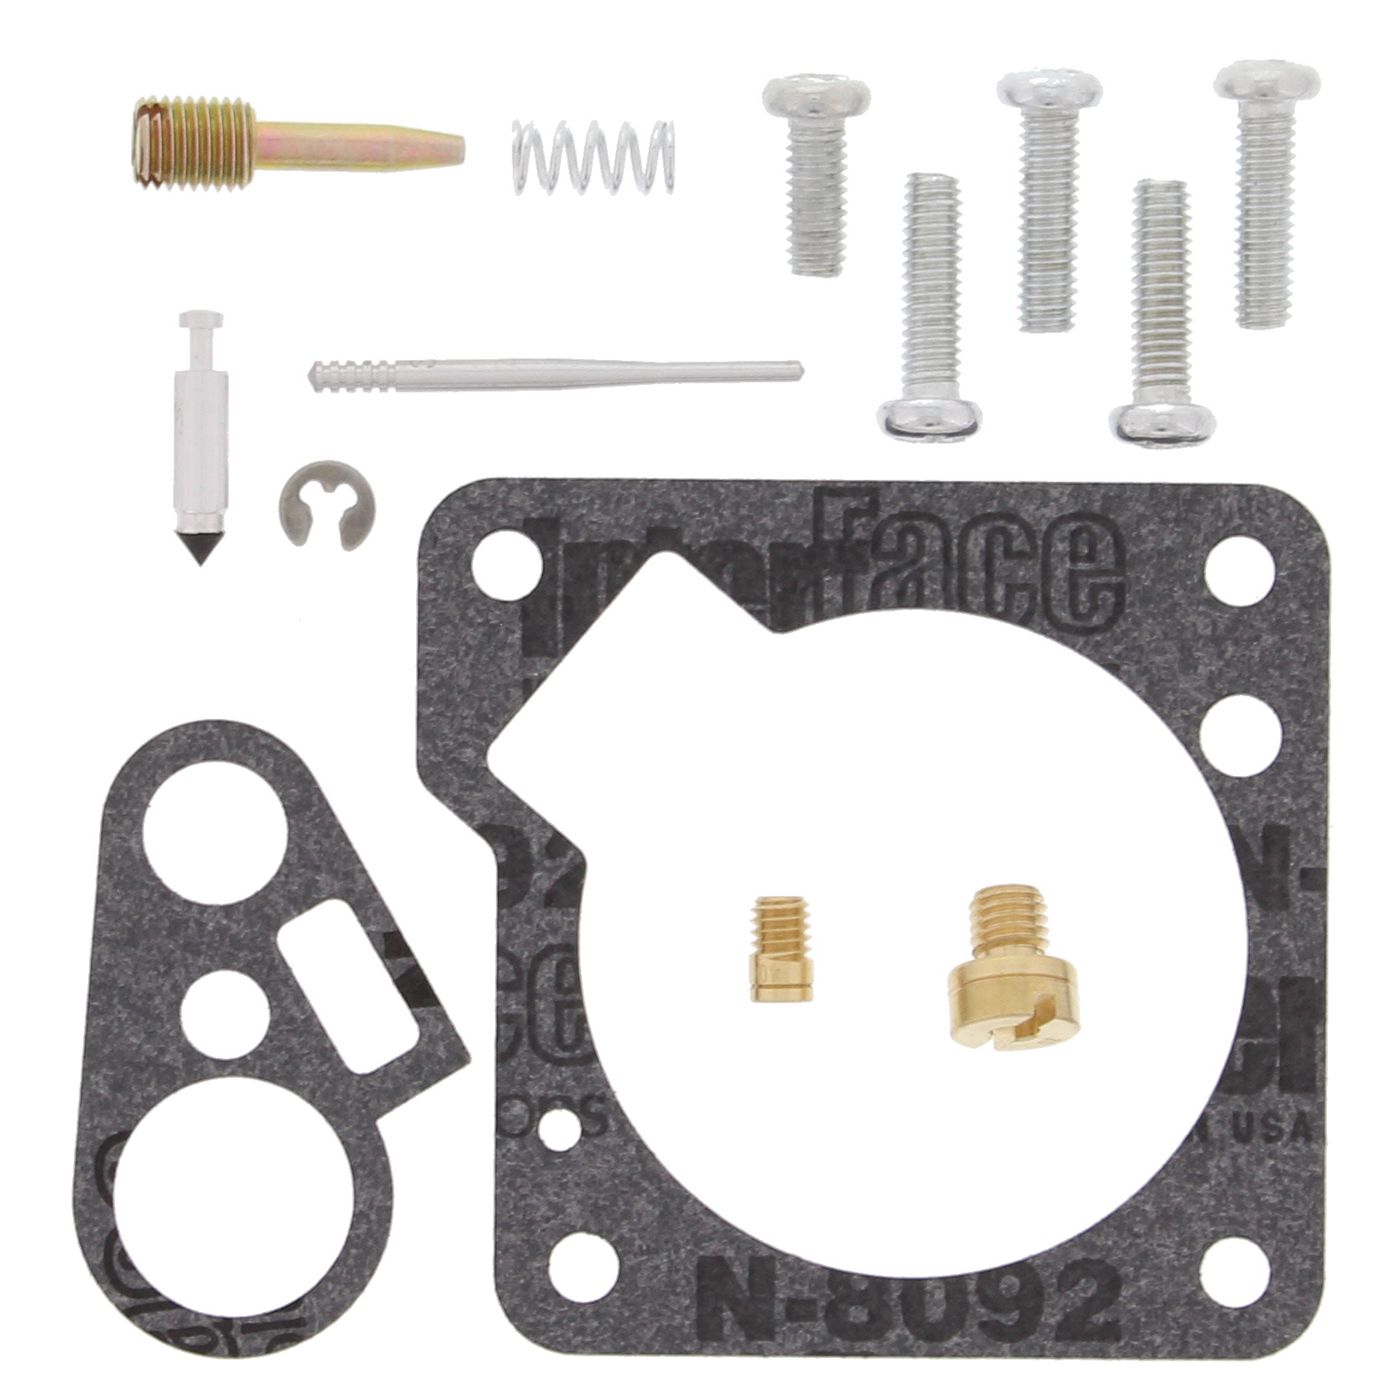 Wrp Carb Repair Kits - WRP261304 image